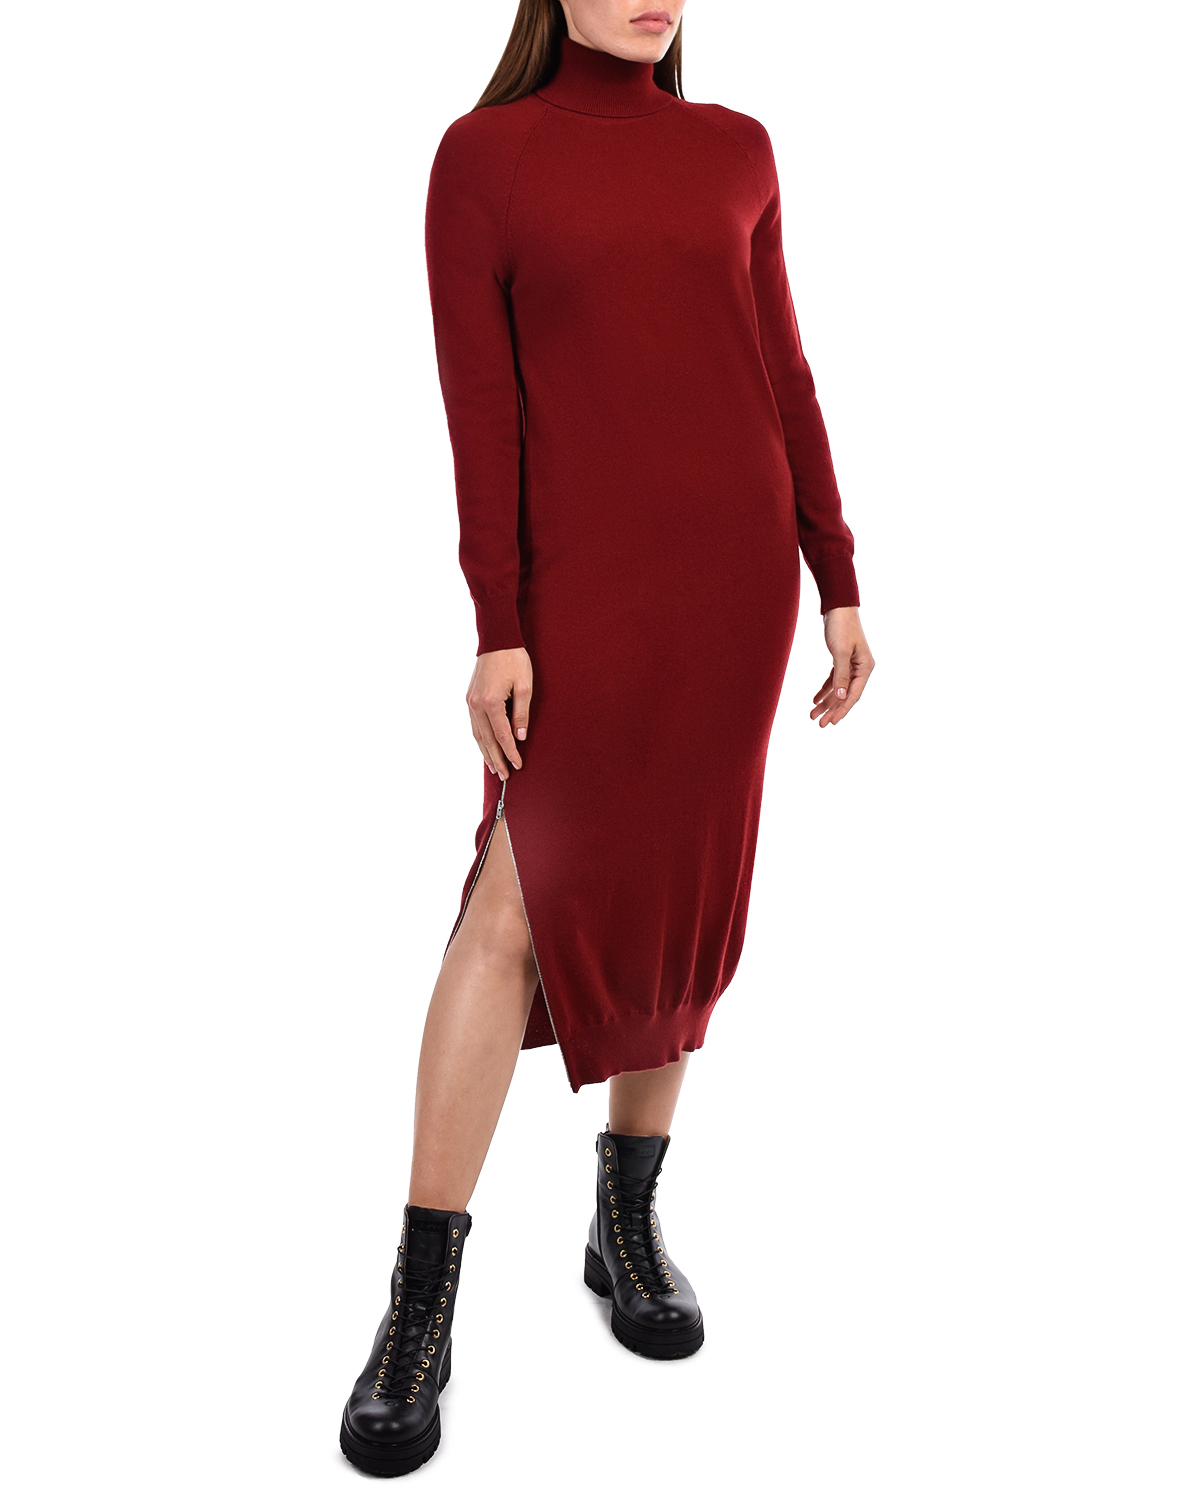 Бордовое платье-водолазка из шерсти и кашемира MRZ - фото 2